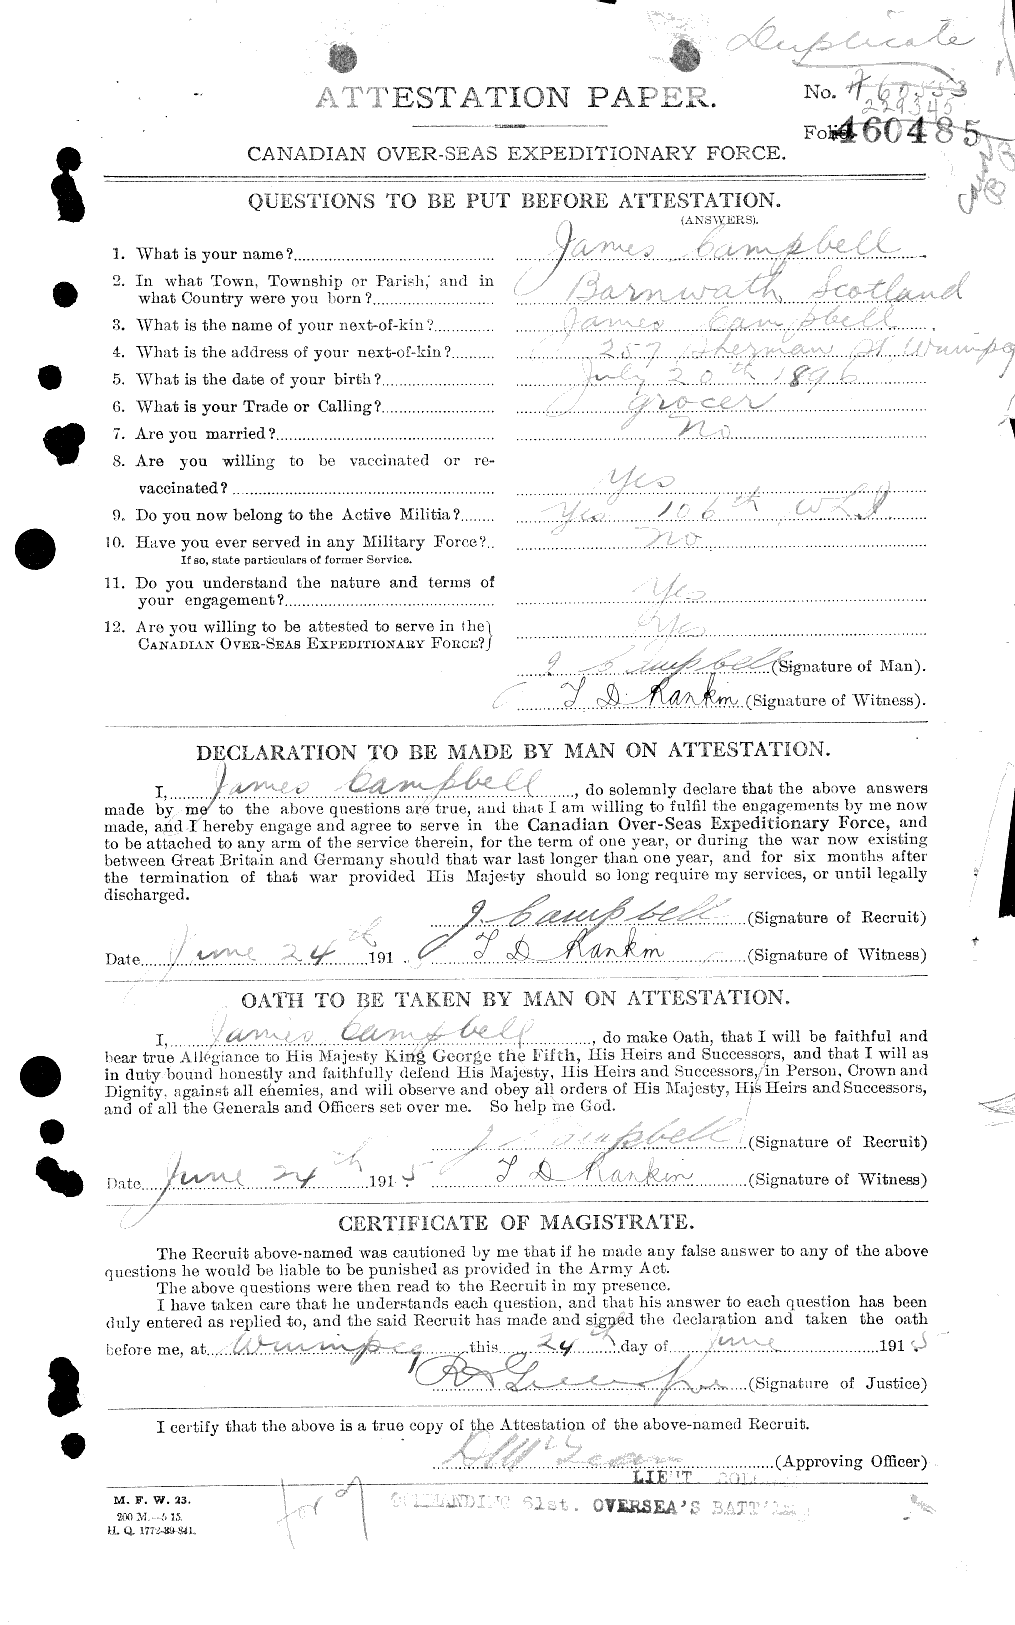 Dossiers du Personnel de la Première Guerre mondiale - CEC 006734a